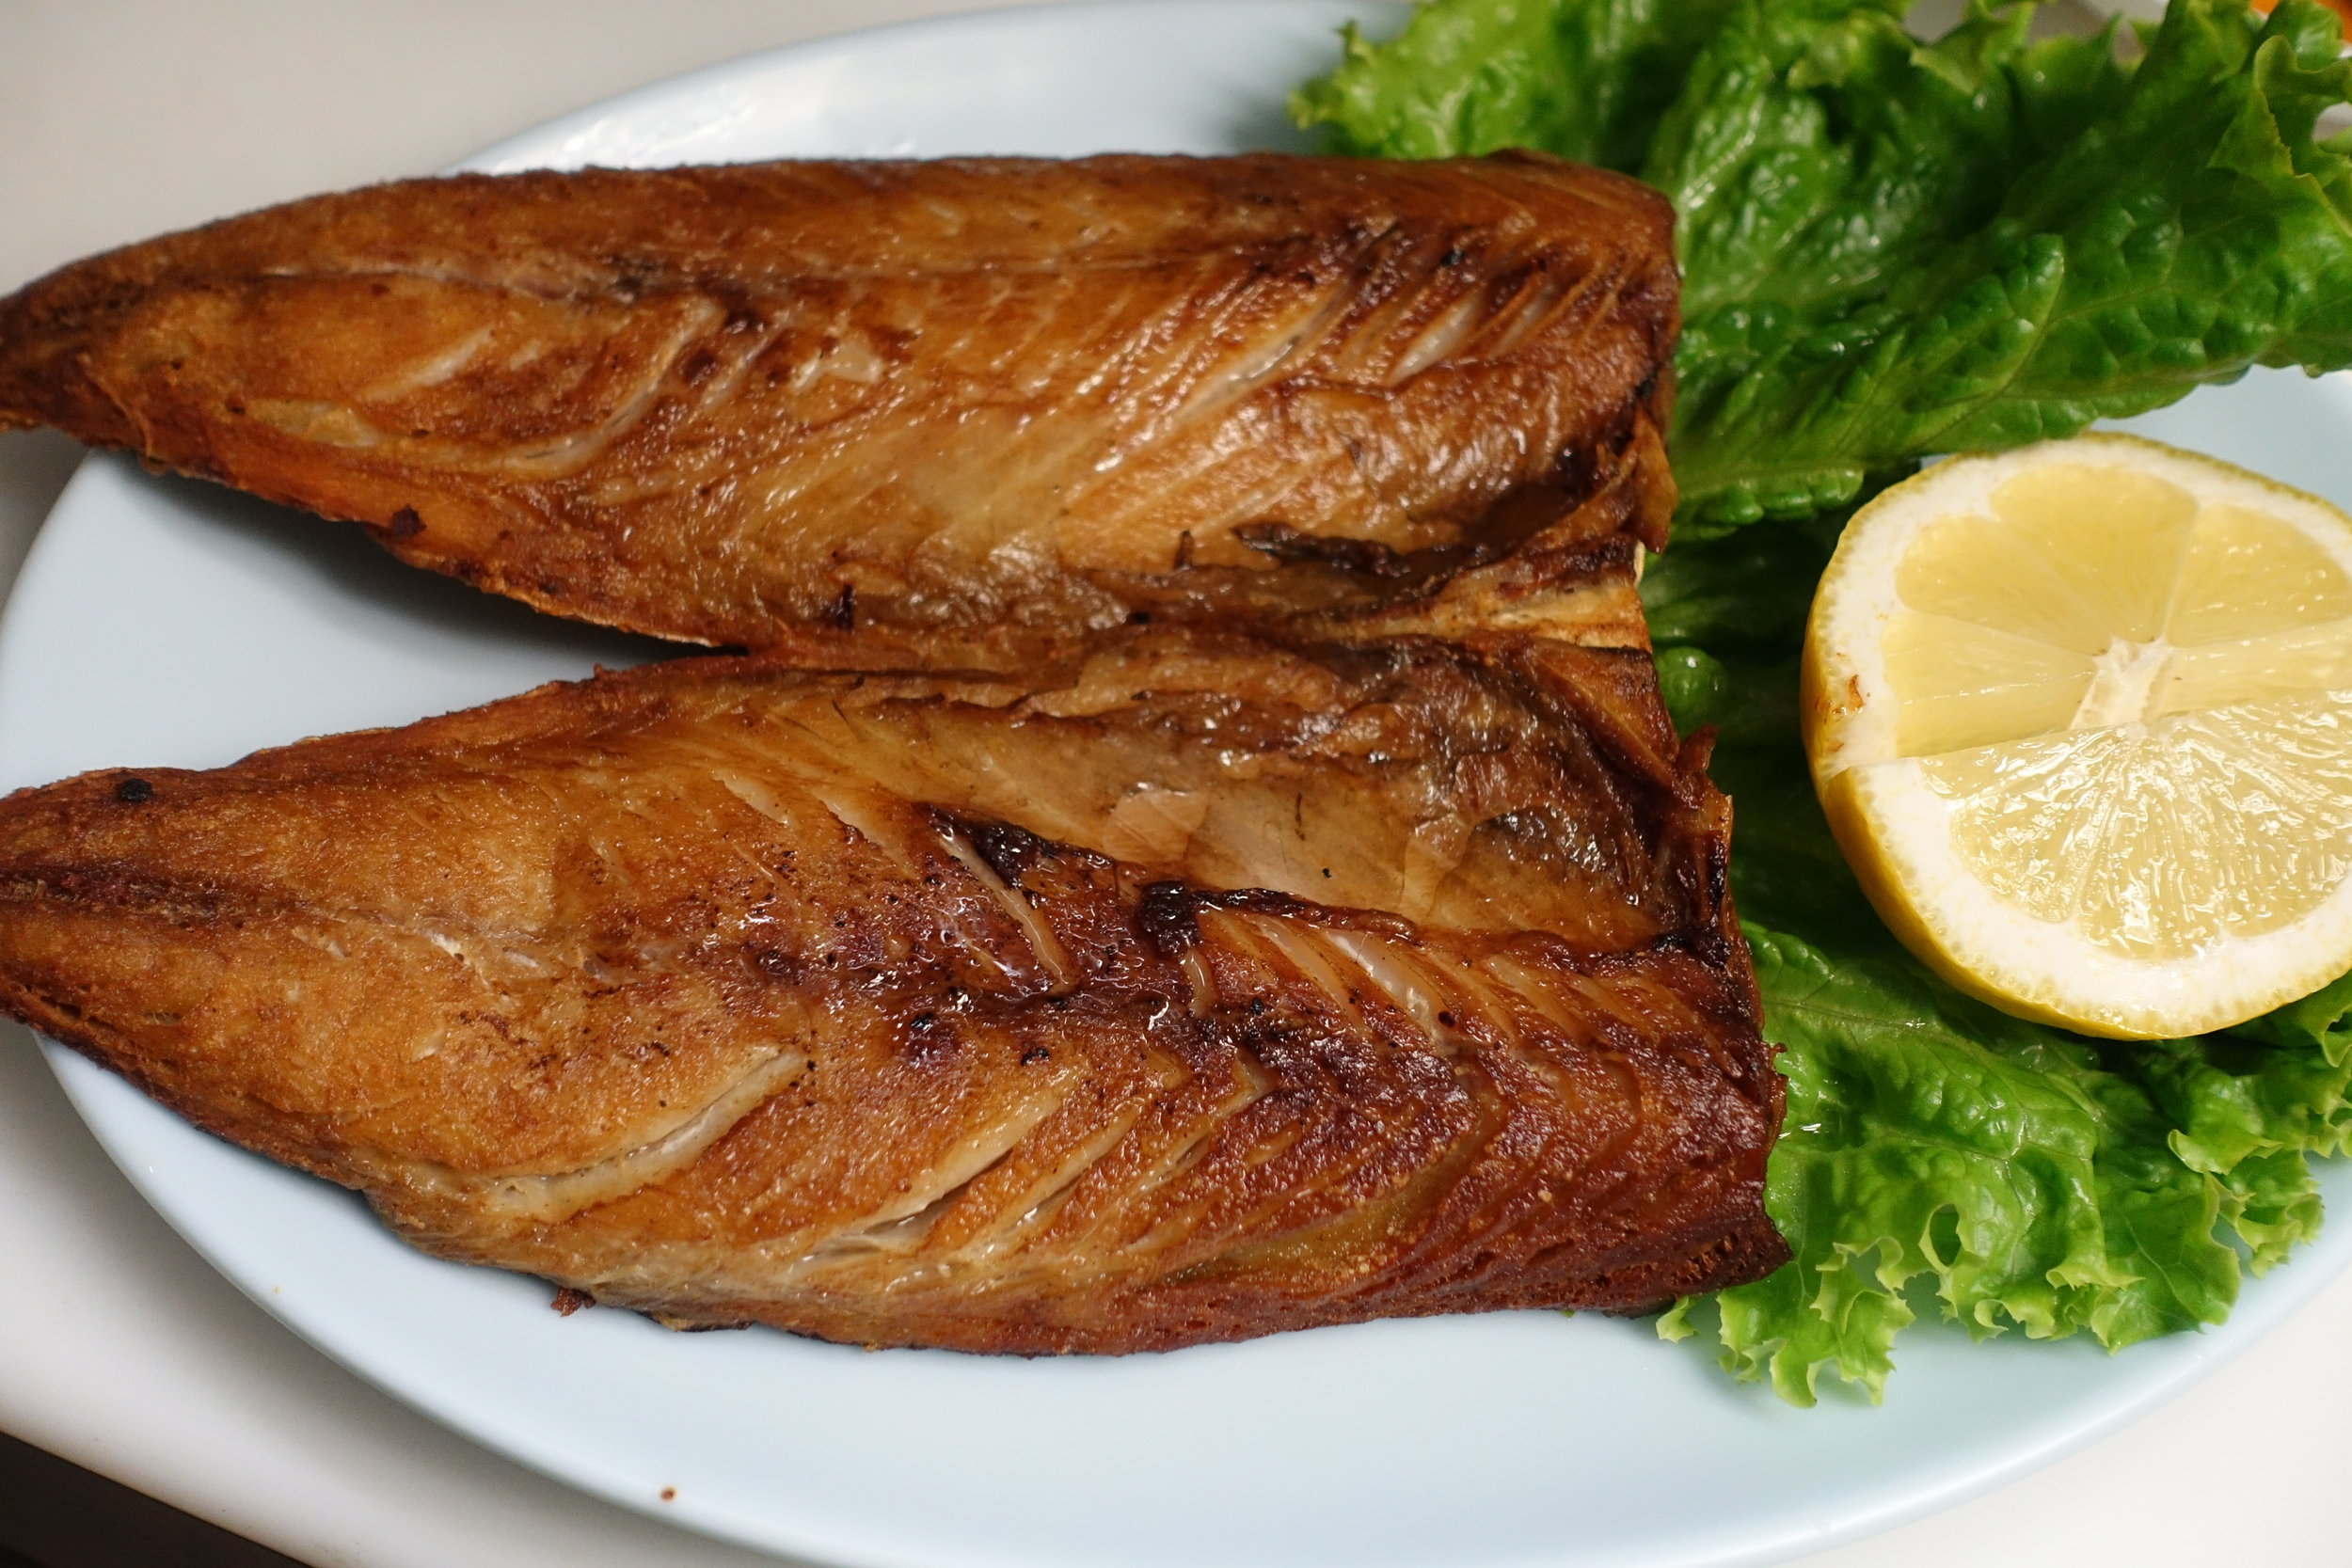 Pan-fried mackerel